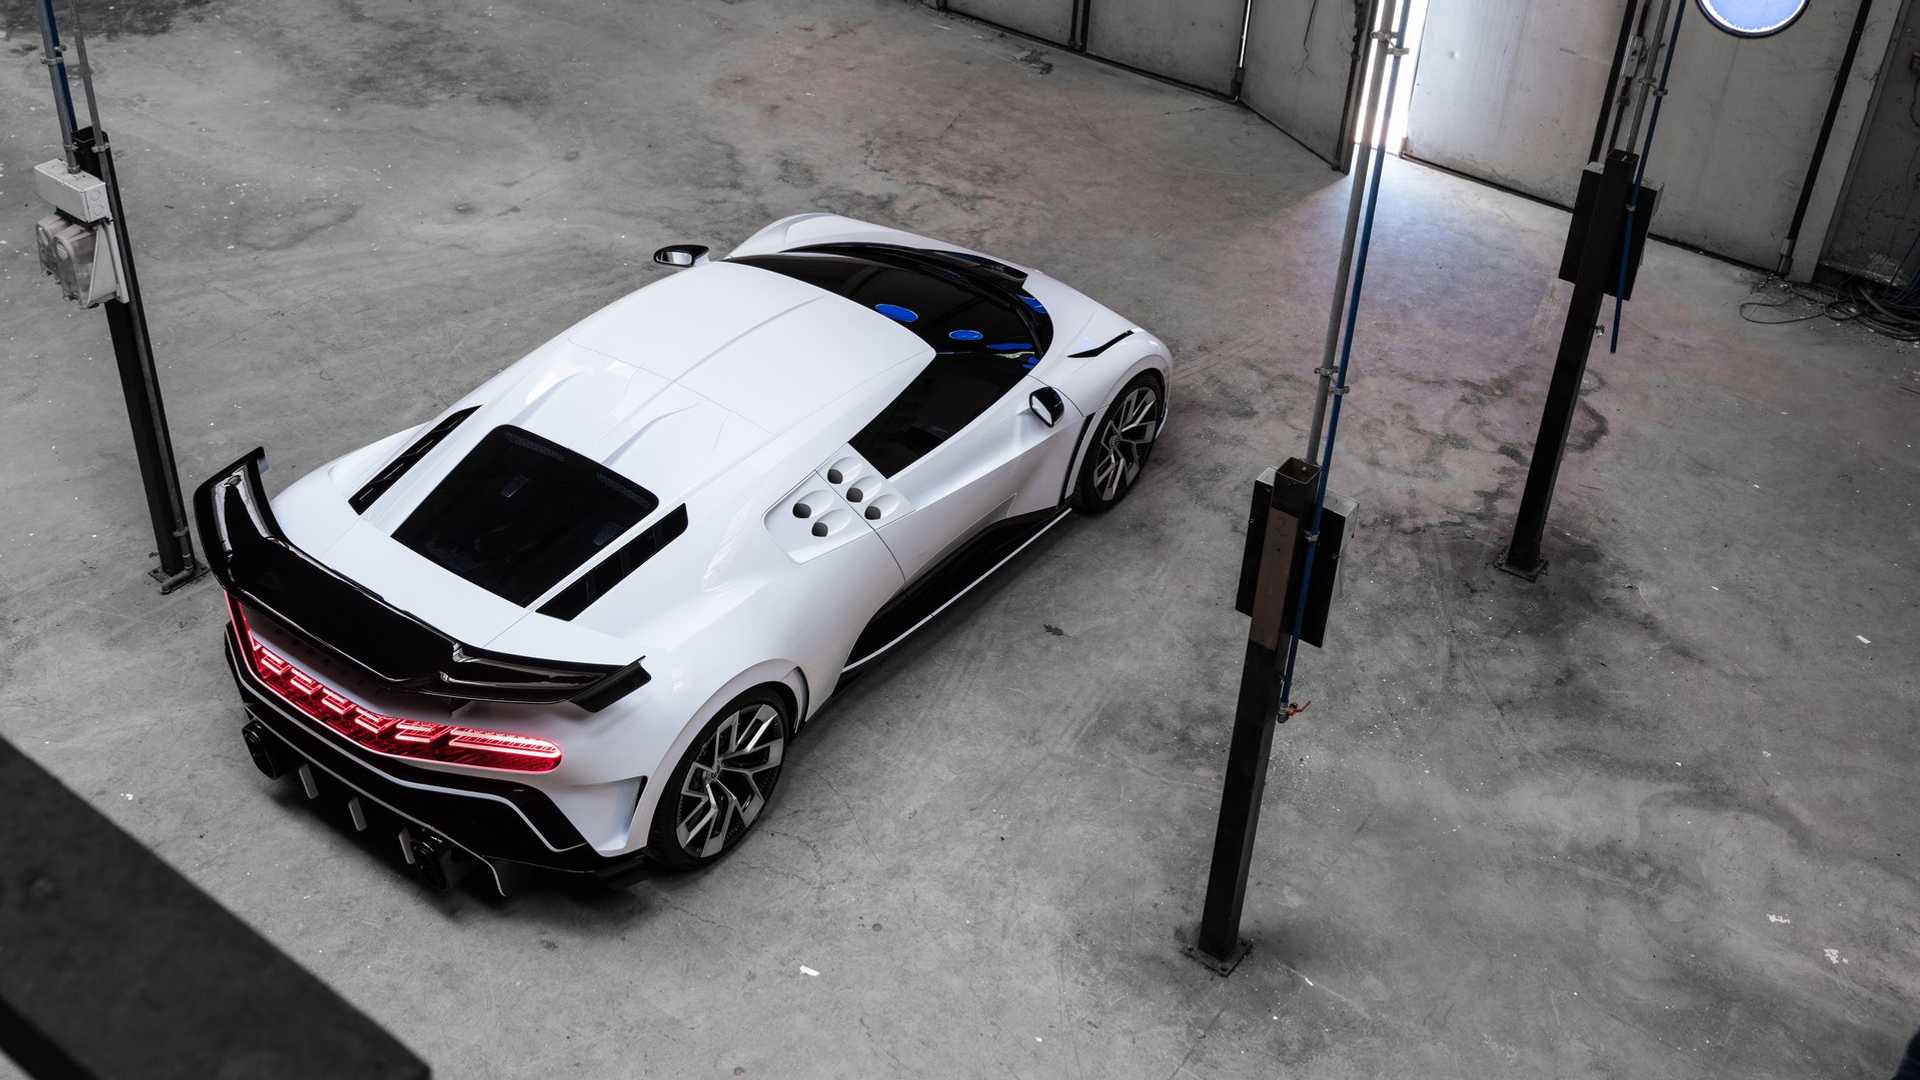 Αυτή είναι η νέα Bugatti των 8 εκατομμυρίων ευρώ! [pics]